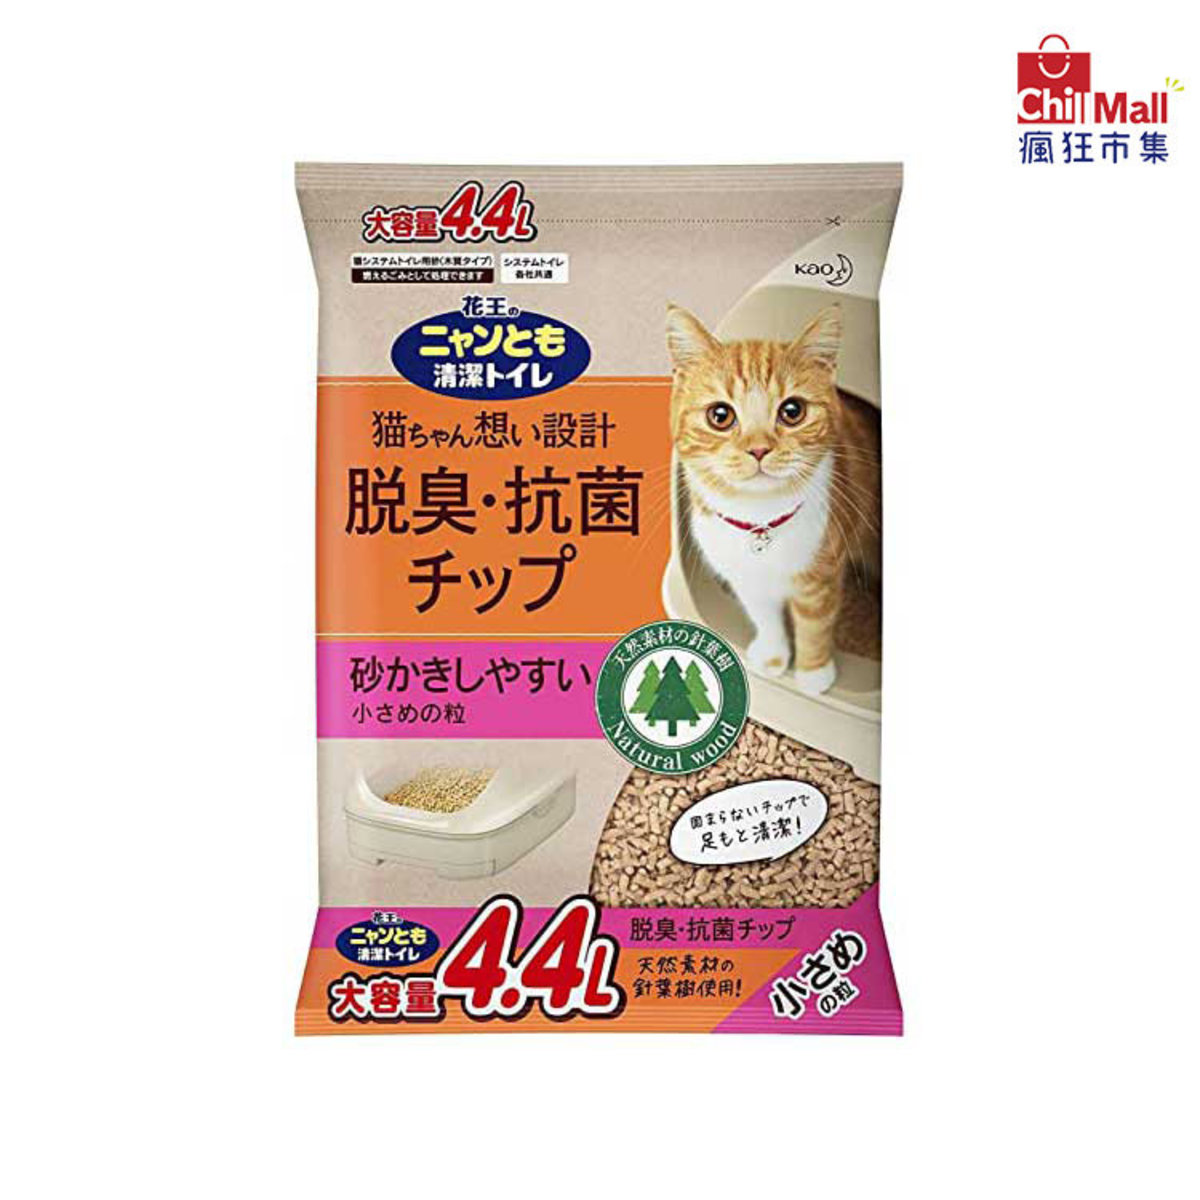 【木貓砂】日本花王脫臭抗菌小粒木貓砂 4.4L (粉紅) 1388322